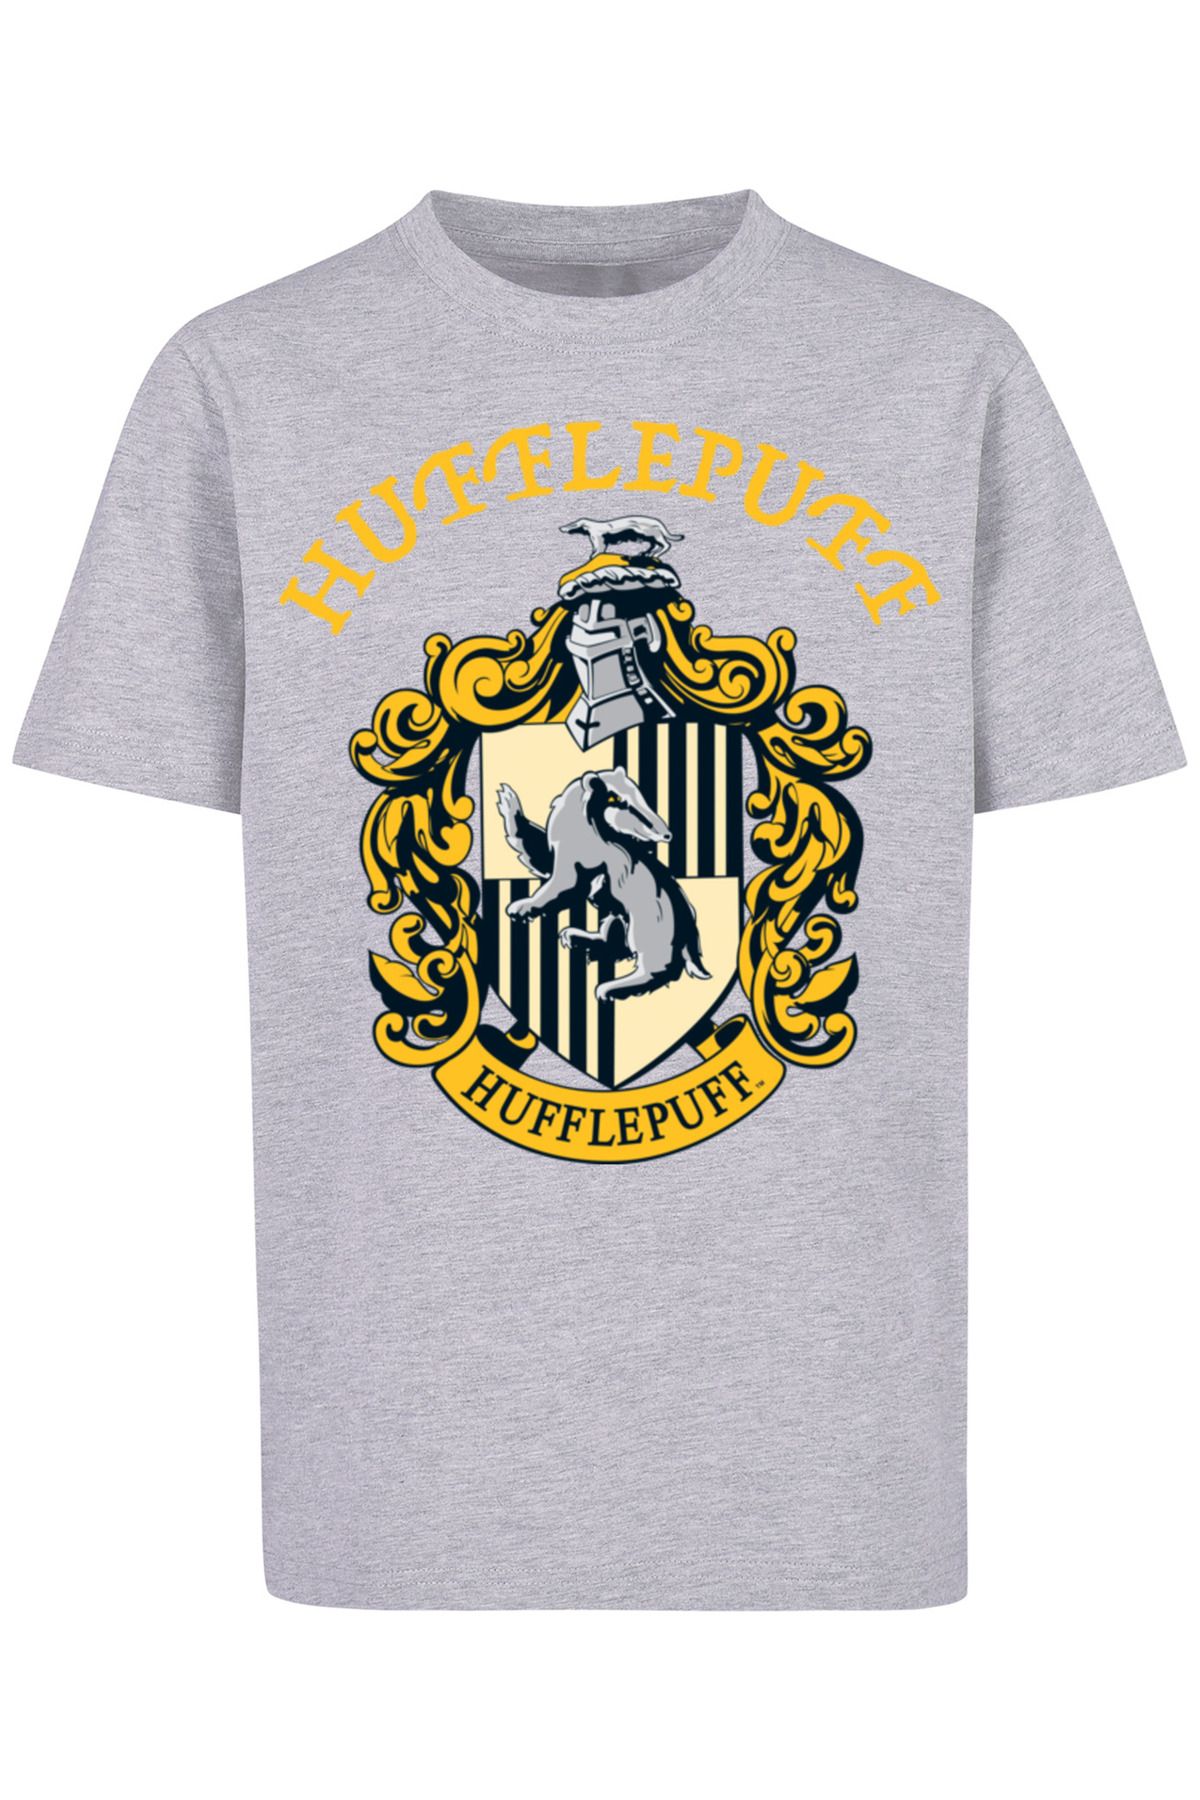 Trendyol - Harry mit Wappen Potter Kinder Kinder-Basic-T-Shirt F4NT4STIC Hufflepuff